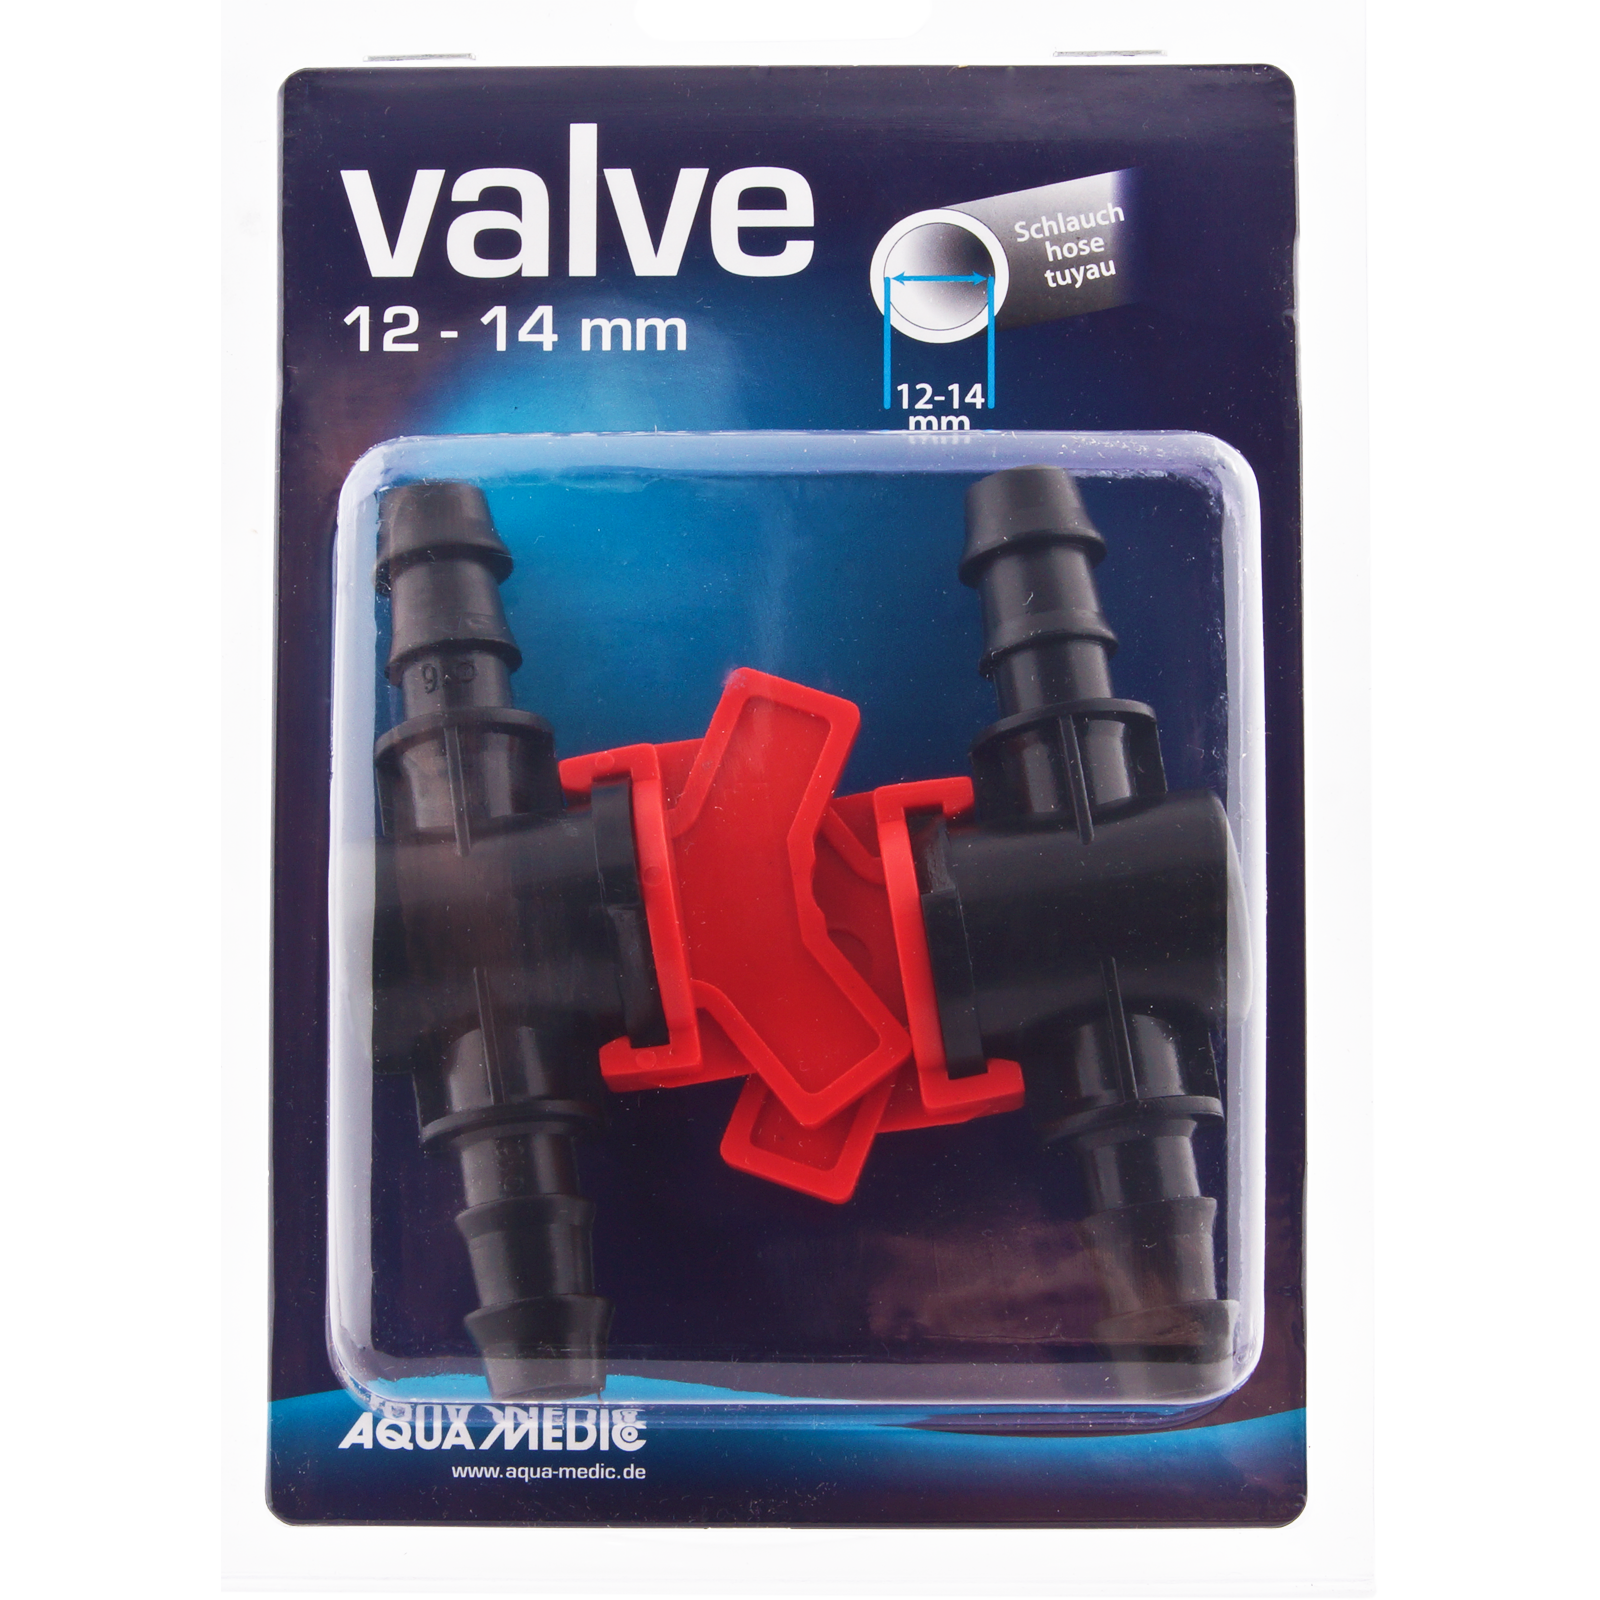 AQUA MEDIC Valve 12 - 14 mm lot de 2 robinets un quart de tour pour tuyau souple 12/16 mm